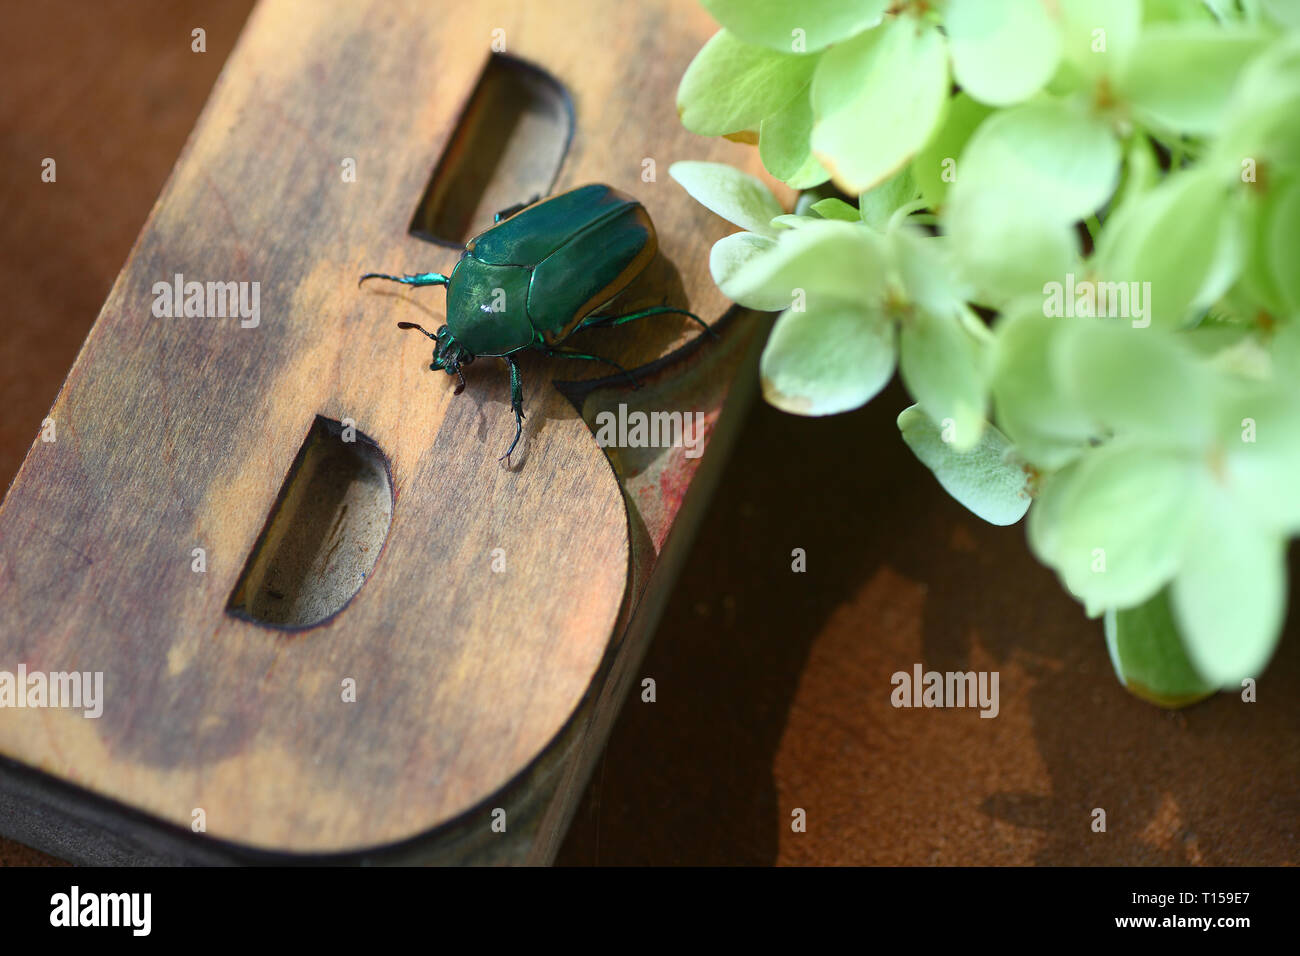 Un gros insecte sur la lettre B en bois type vert pâle avec des fleurs d'hortensias Banque D'Images